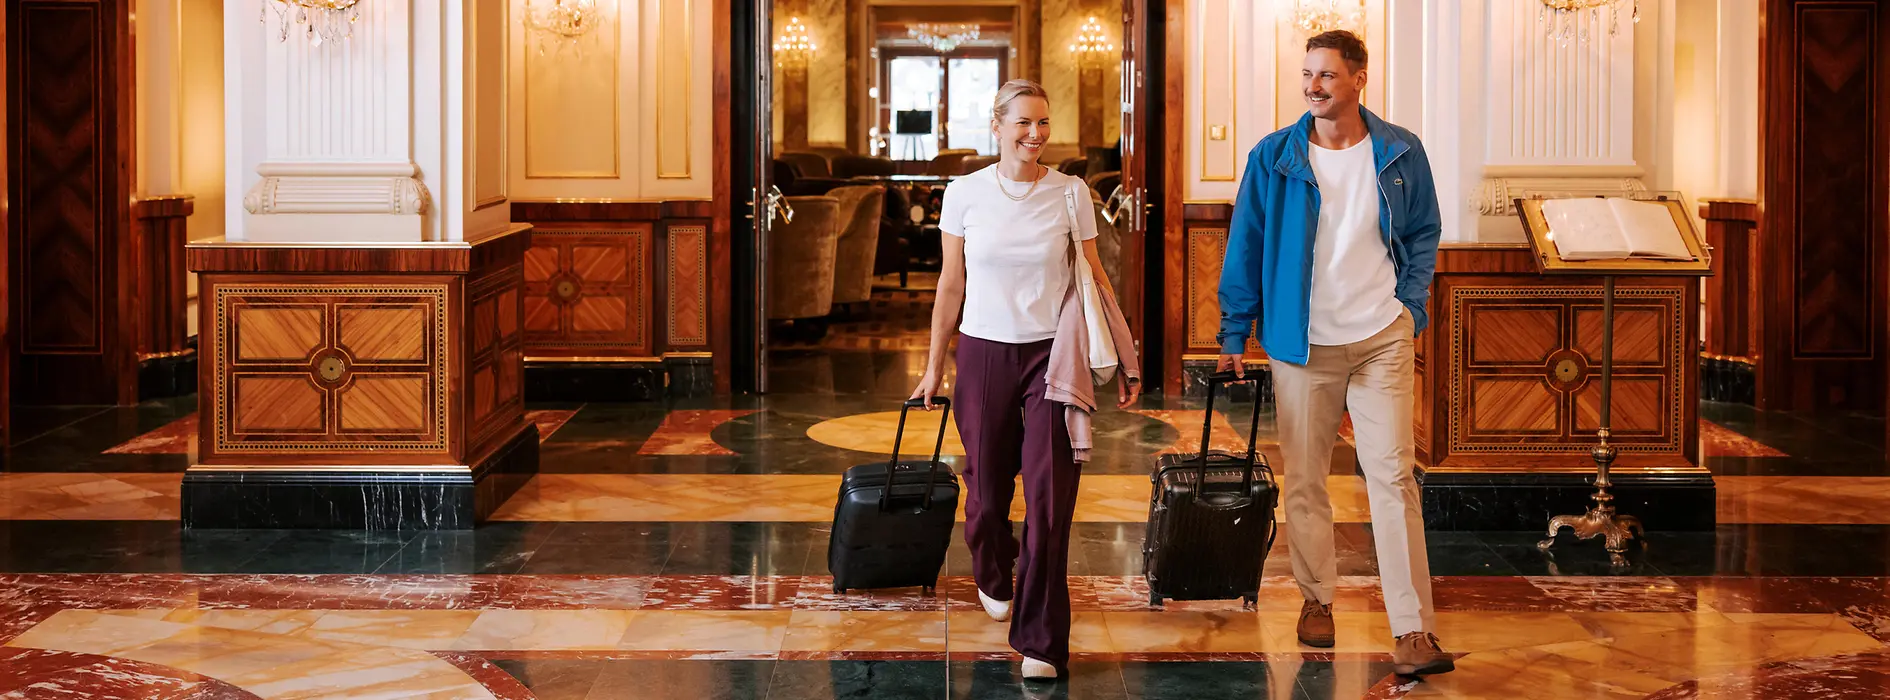 Dwie kobiety z bagażami w wiedeńskim hotelu